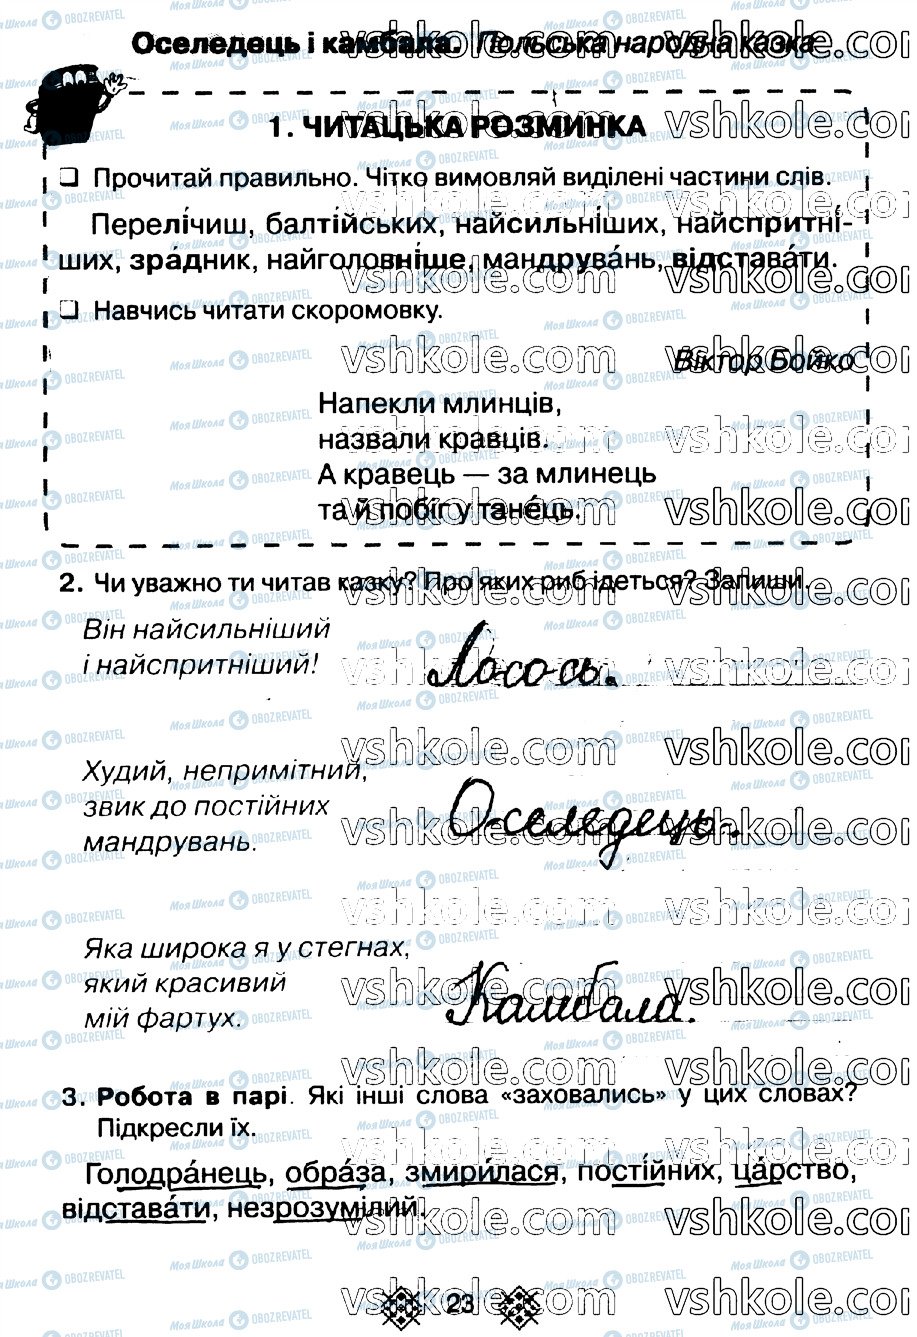 ГДЗ Українська мова 2 клас сторінка стр23